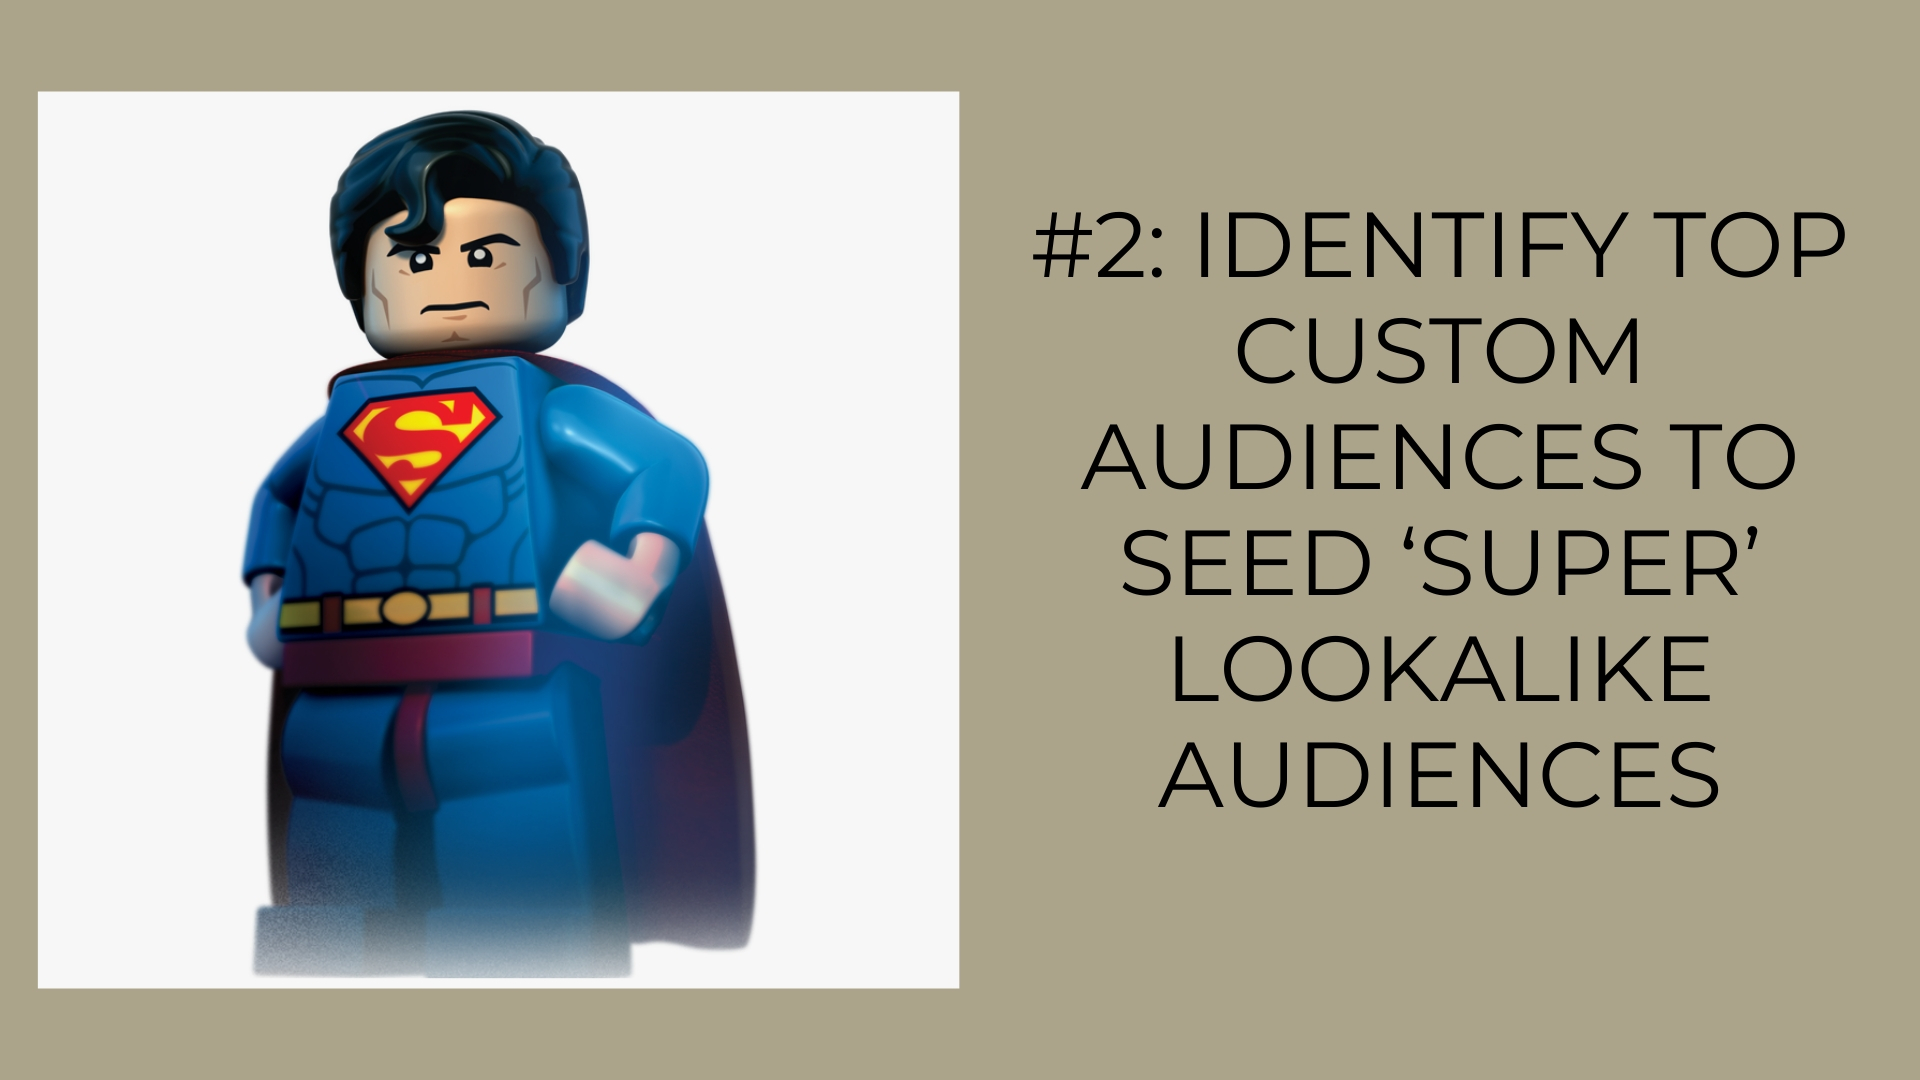 Identify Top Custom Audiences to Seed ‘Super’ Lookalike Audiences